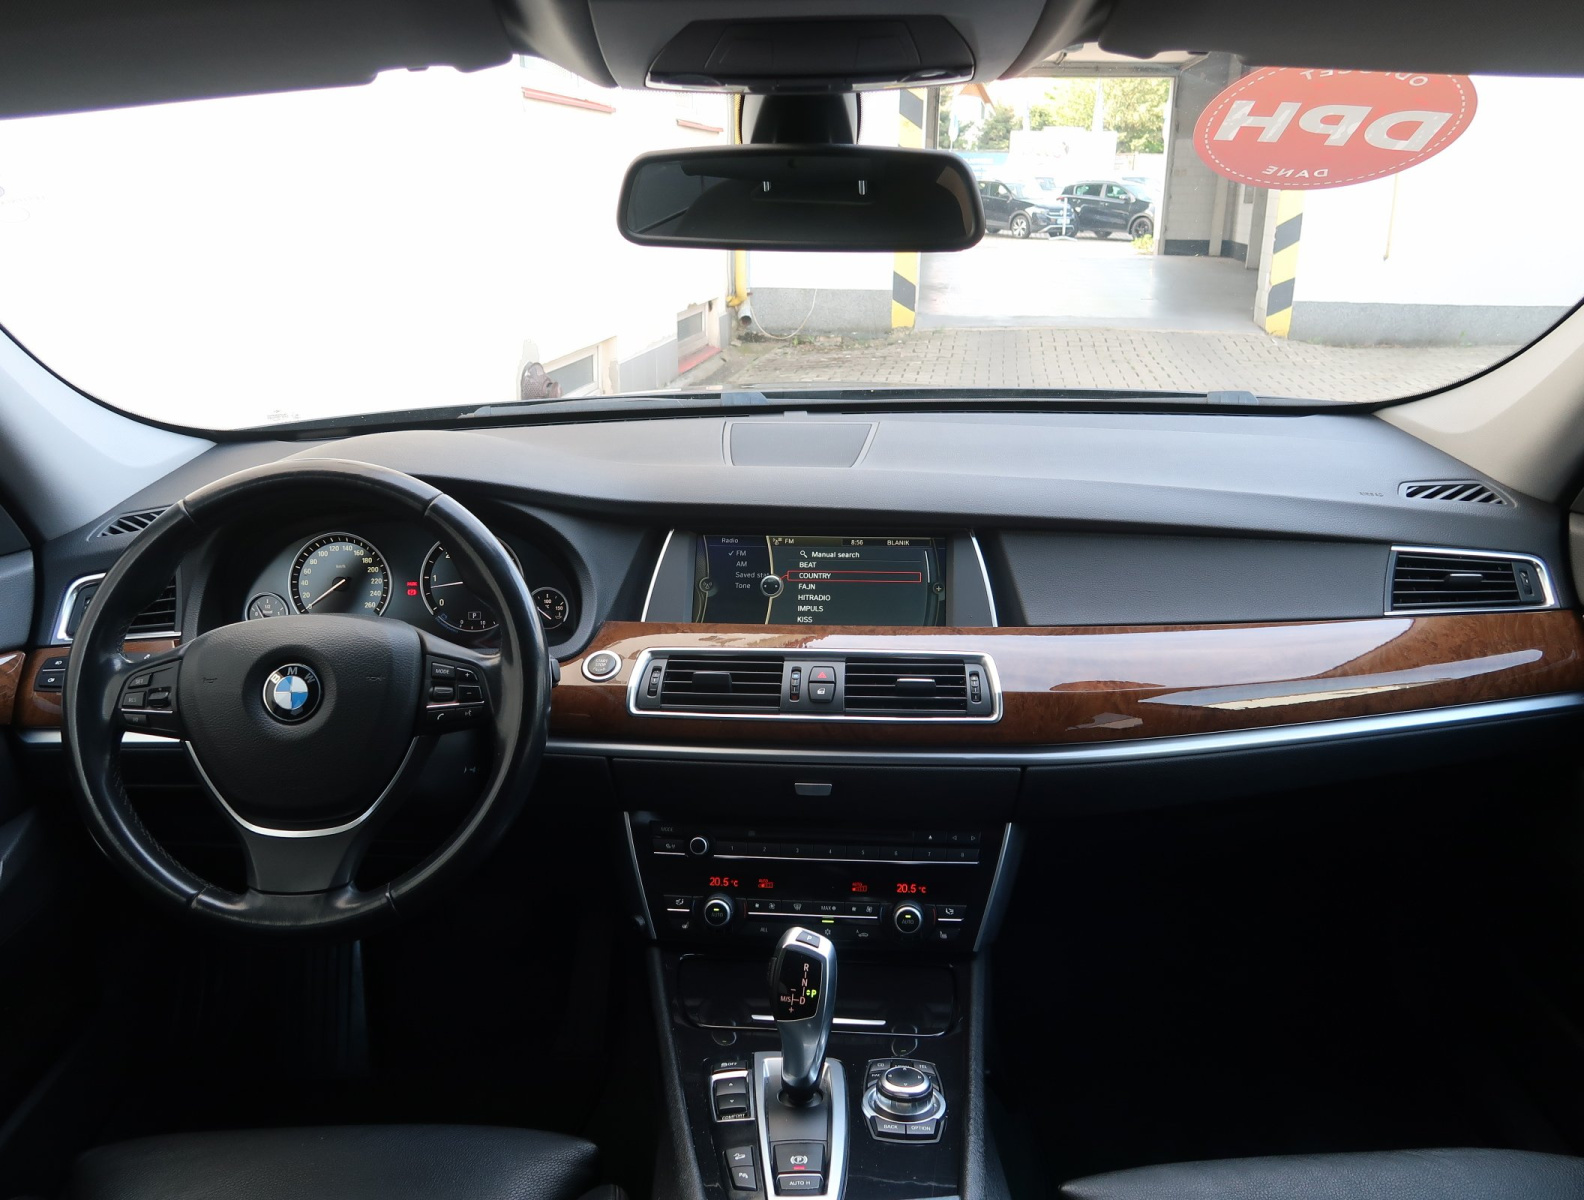 BMW 530d xDrive GT, 2012, 530d xDrive GT, 180kW, 4x4